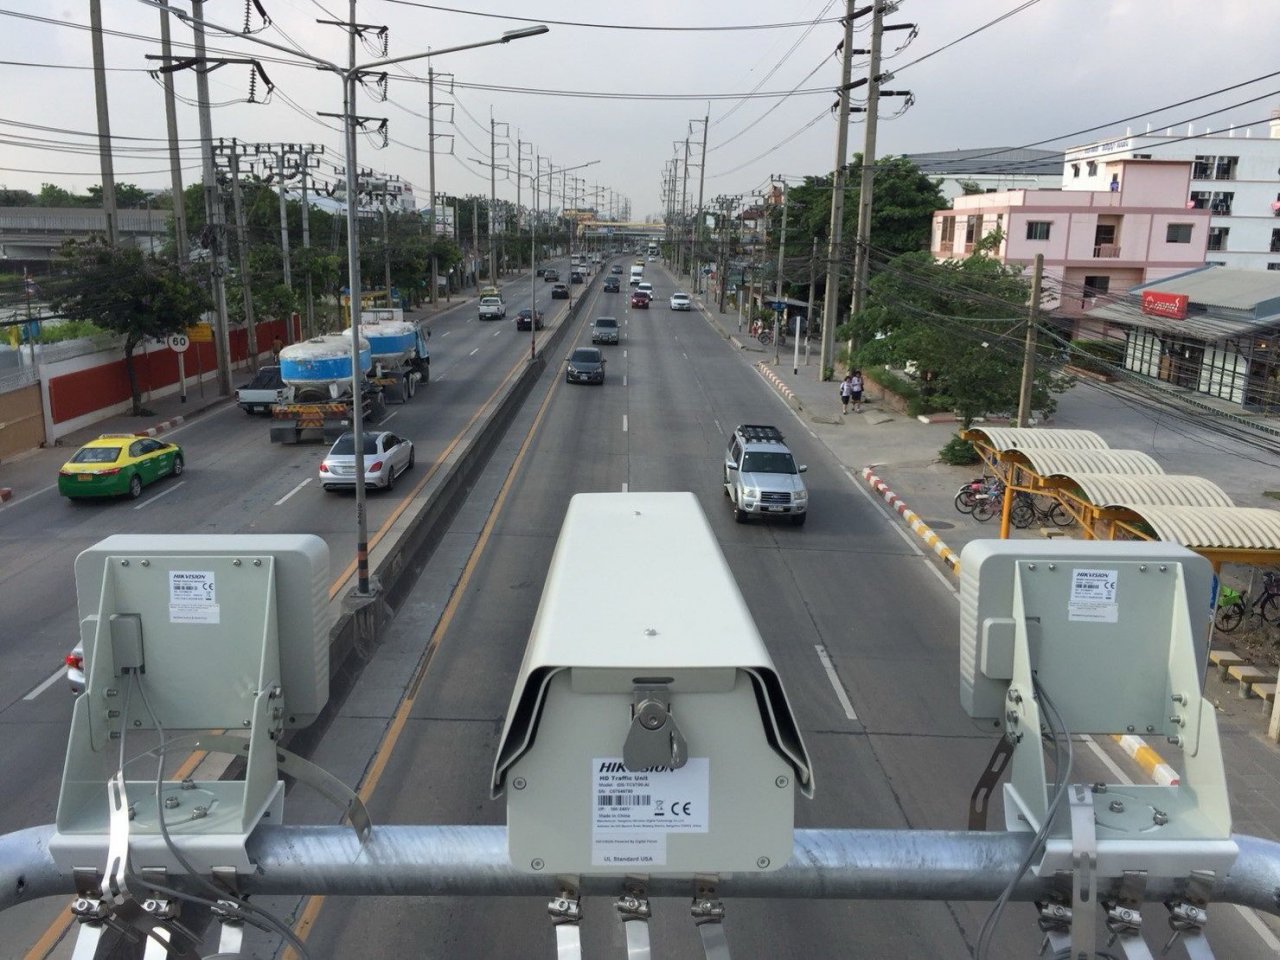 Bangkok to add 10 road cameras in bid to cut speeding deaths